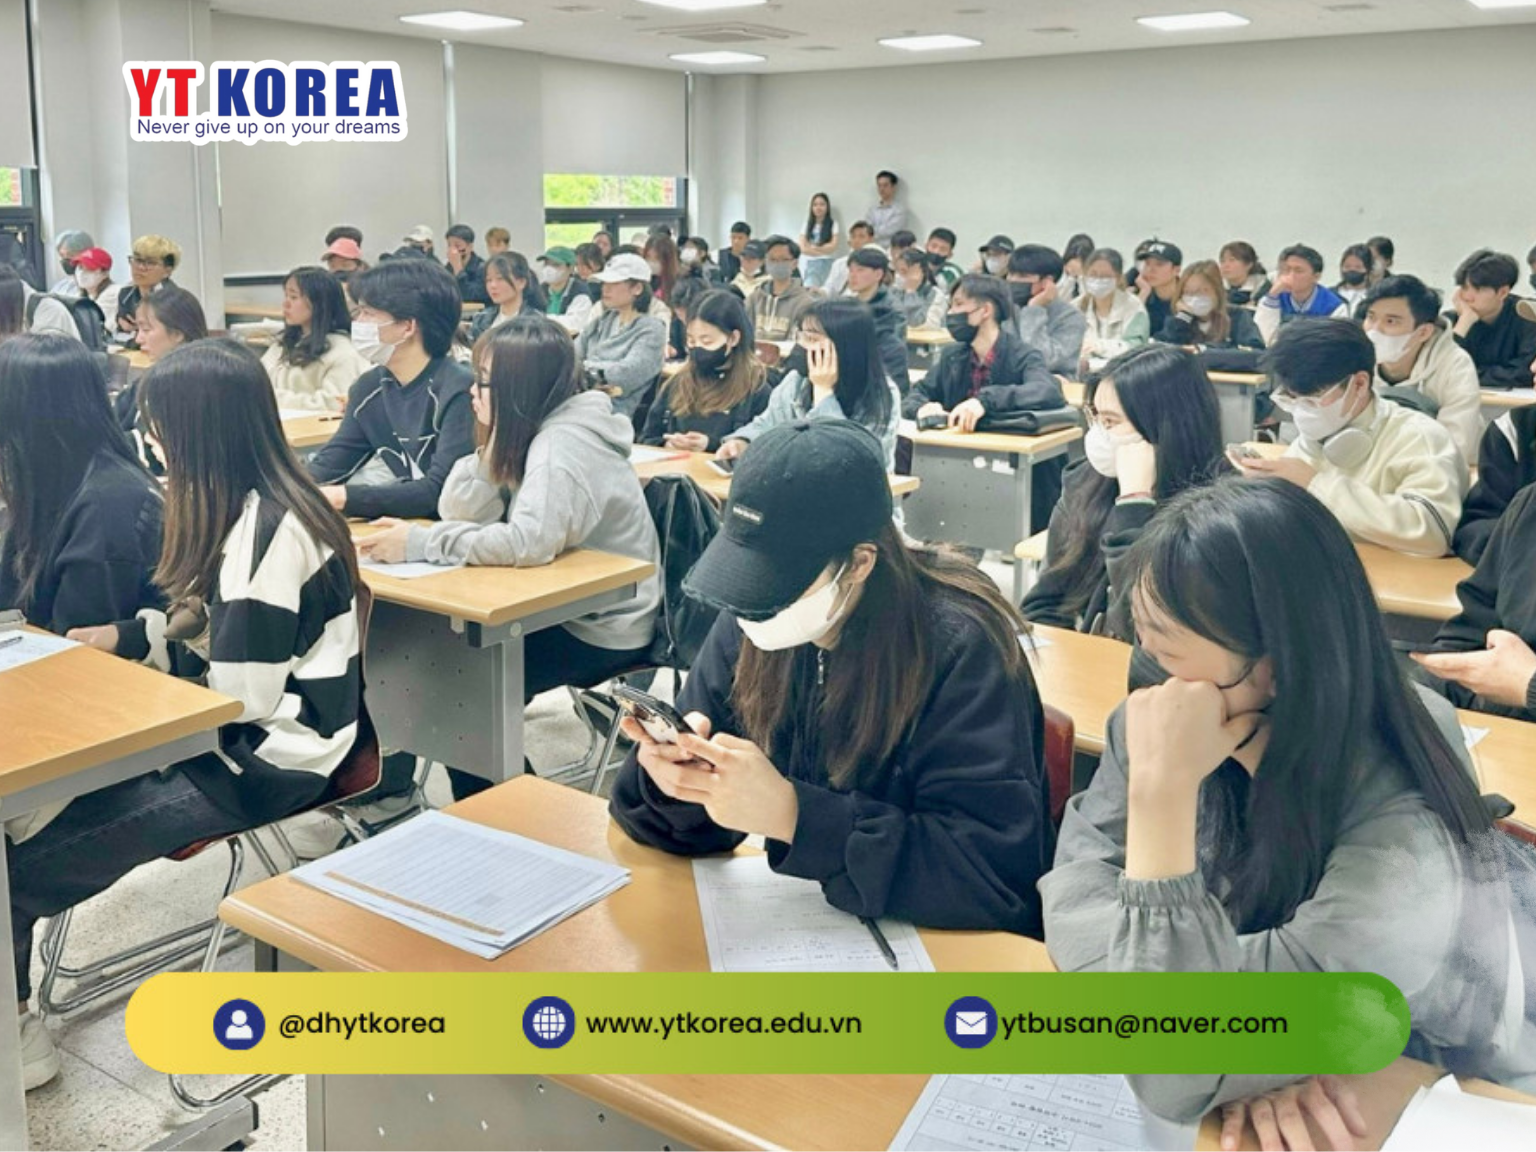 Hồ sơ lên chuyên ngành tại Hàn Quốc